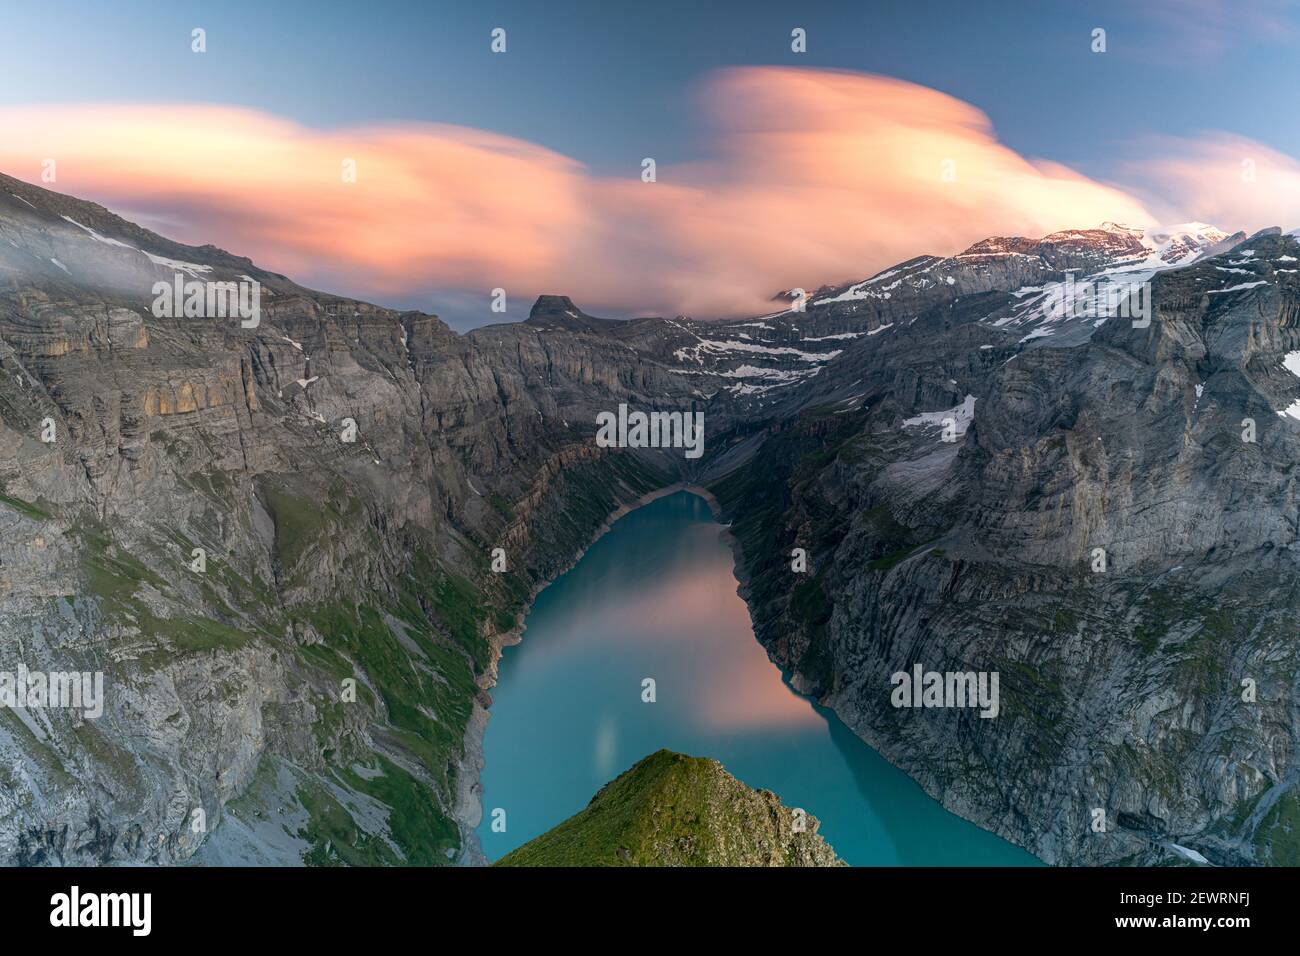 Wolken bei Sonnenuntergang über dem unberührten Limmernsee und Bergen, Luftbild, Kanton Glarus, Schweiz, Europa Stockfoto